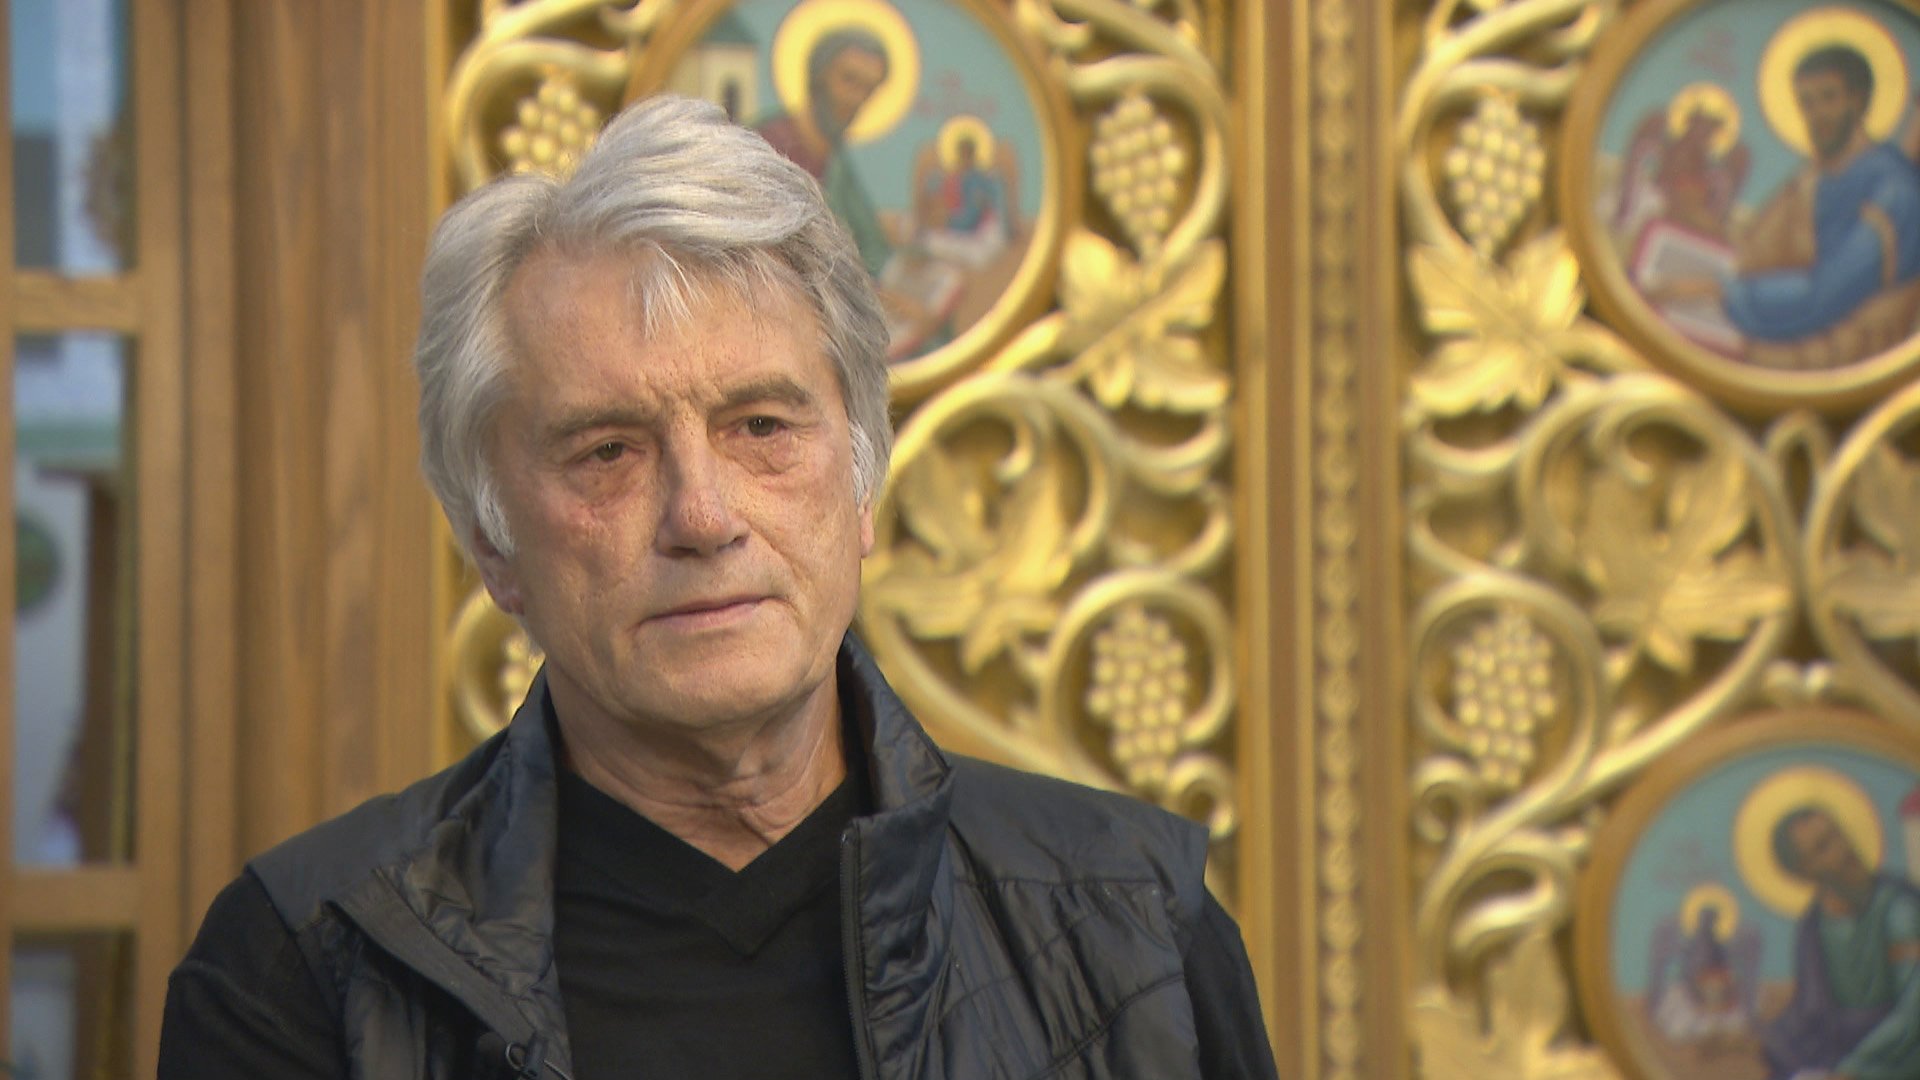 In Chicago, Former Ukrainian President Viktor Yushchenko Talks ... - WTTW News